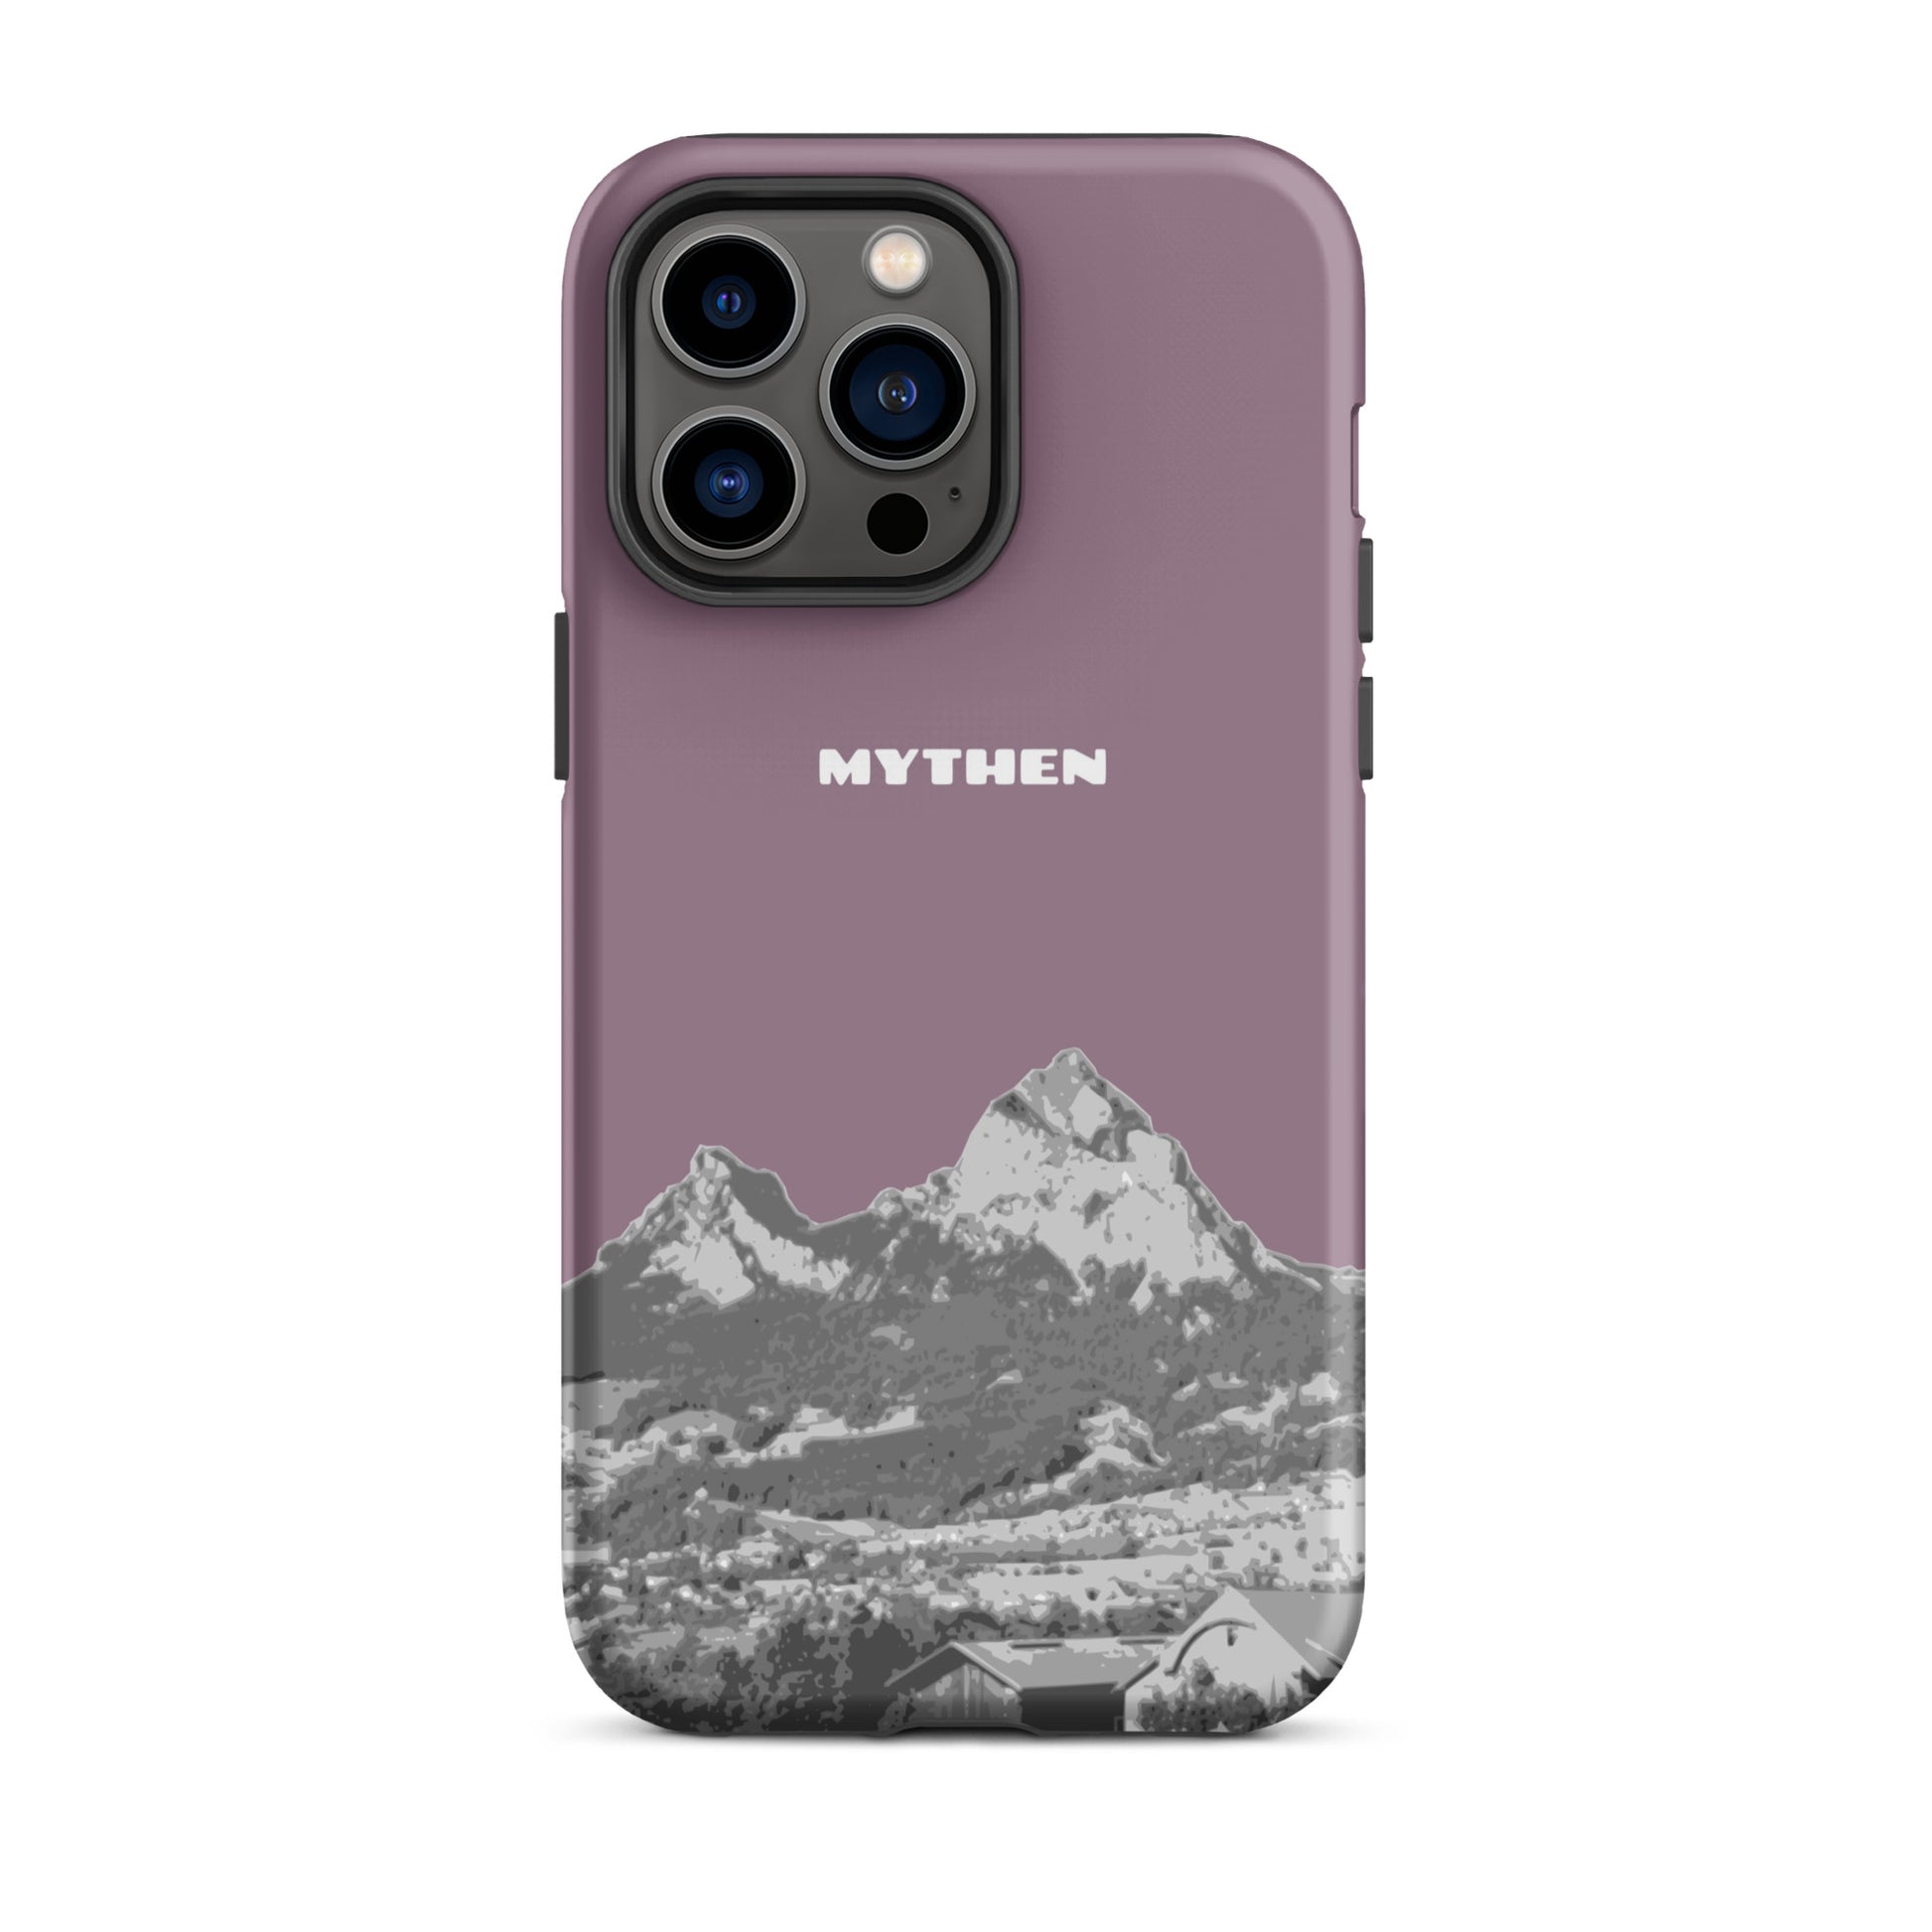 Hülle für das iPhone 14 Pro Max von Apple in der Farbe Pastellviolett, die den Grossen Mythen und den Kleinen Mythen bei Schwyz zeigt. 